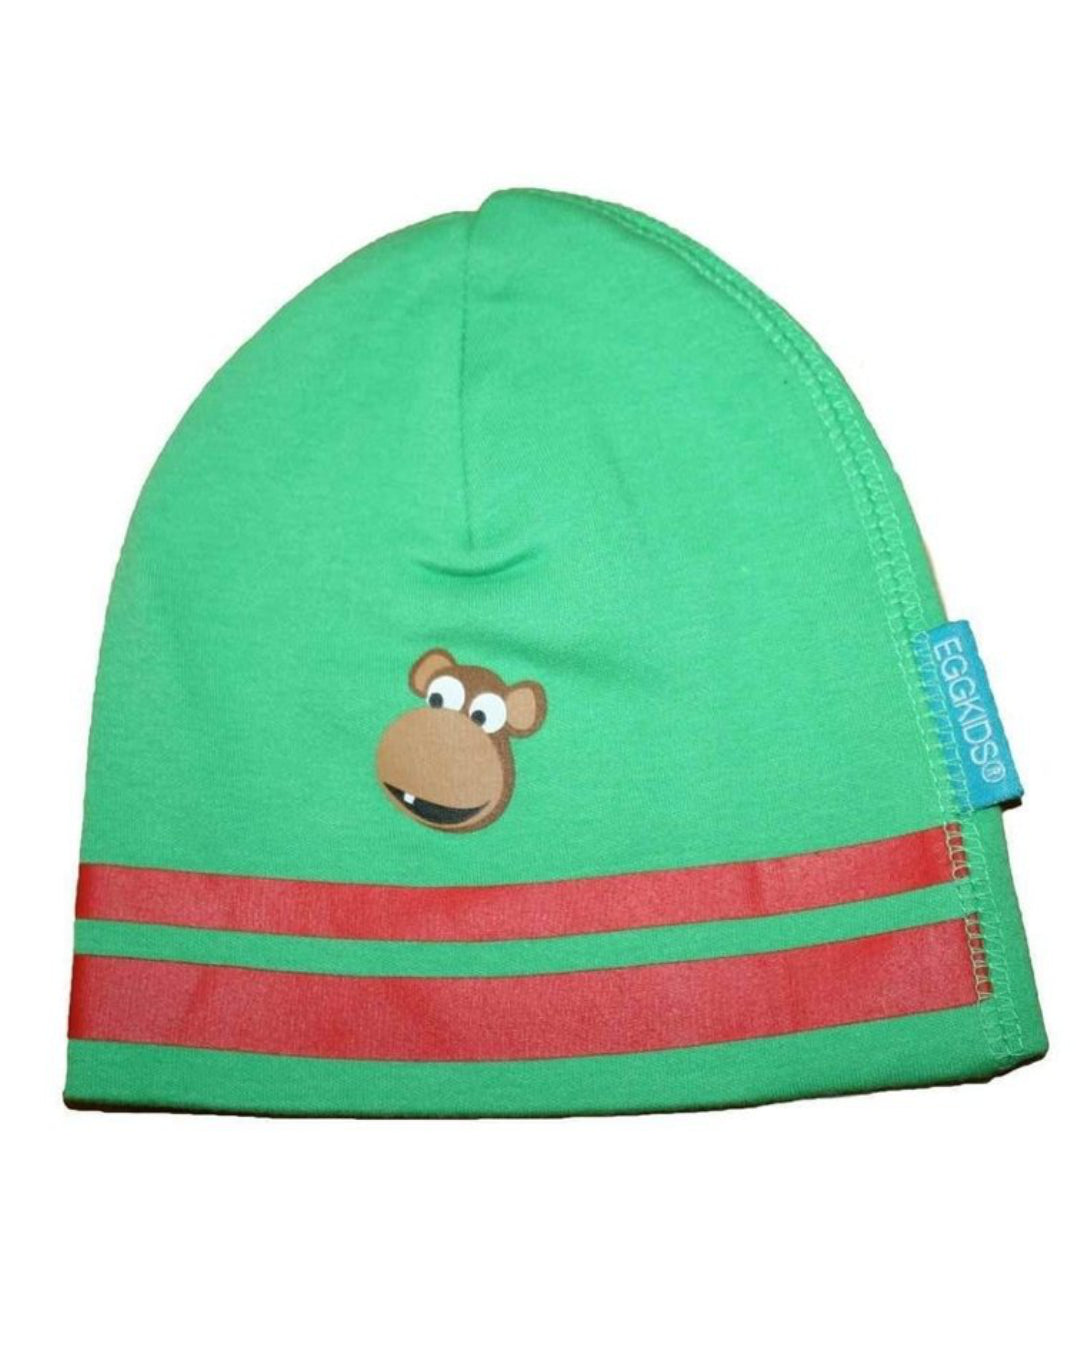 Grüne Babymütze mit zwei roten Streifen am Rand und kleinem braunem Affenkopf